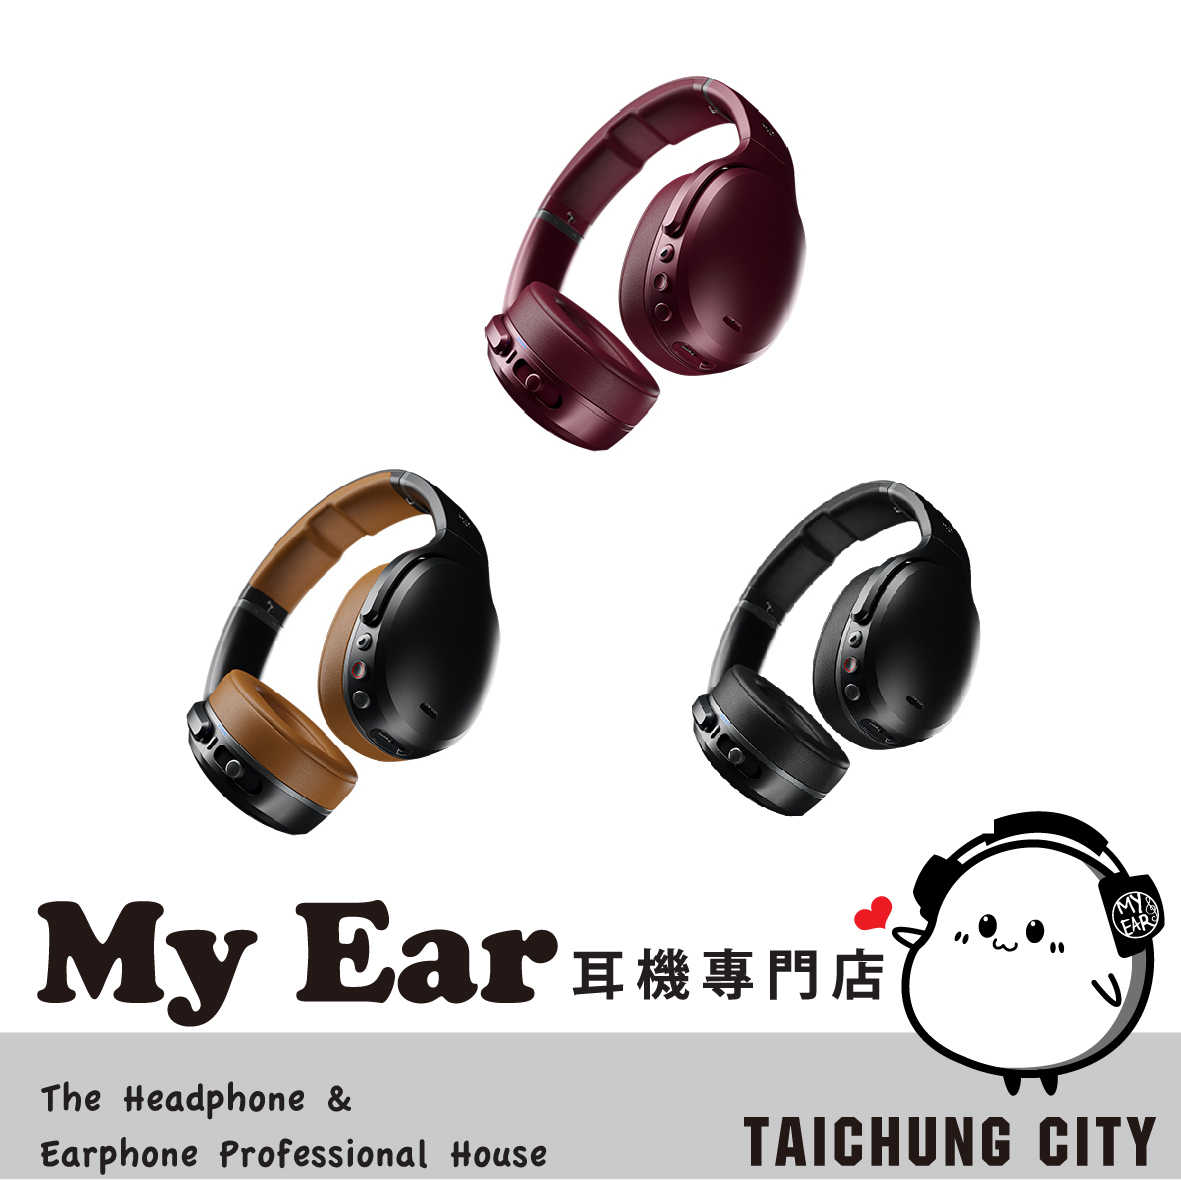 Skullcandy 骷髏糖 Crusher ANC 主動降噪 藍芽 耳罩式 耳機 | My Ear 耳機專門店